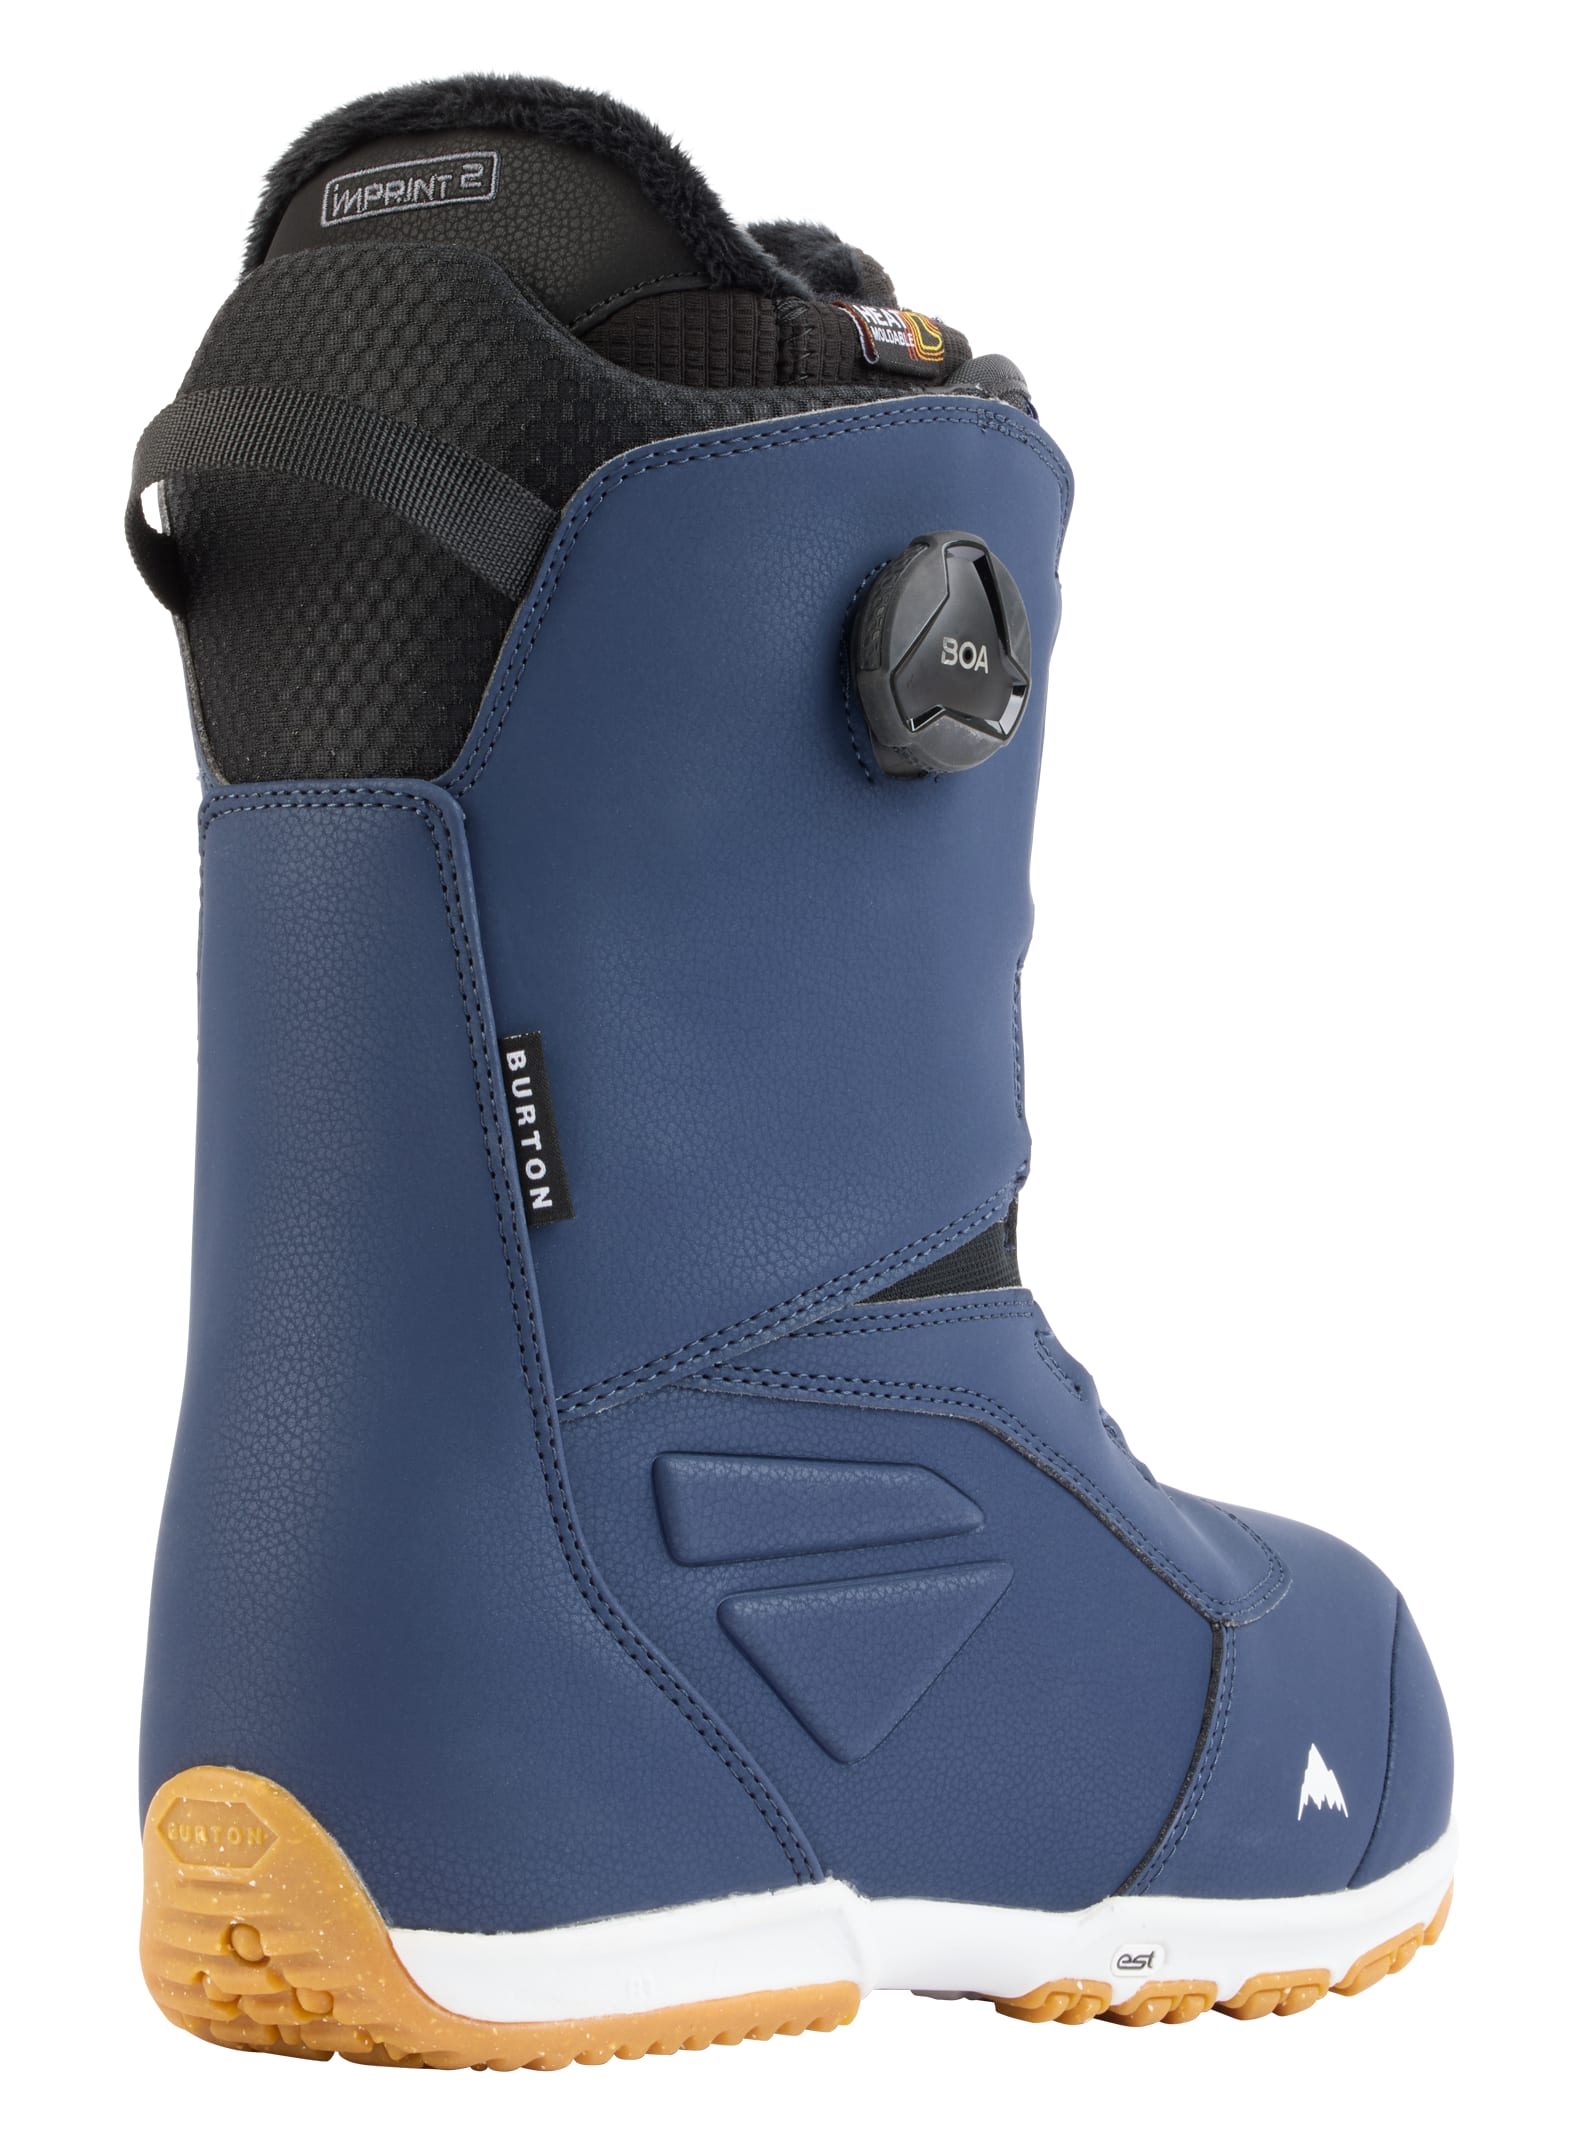 Men's Snowboard Boots | Burton Snowboards IE